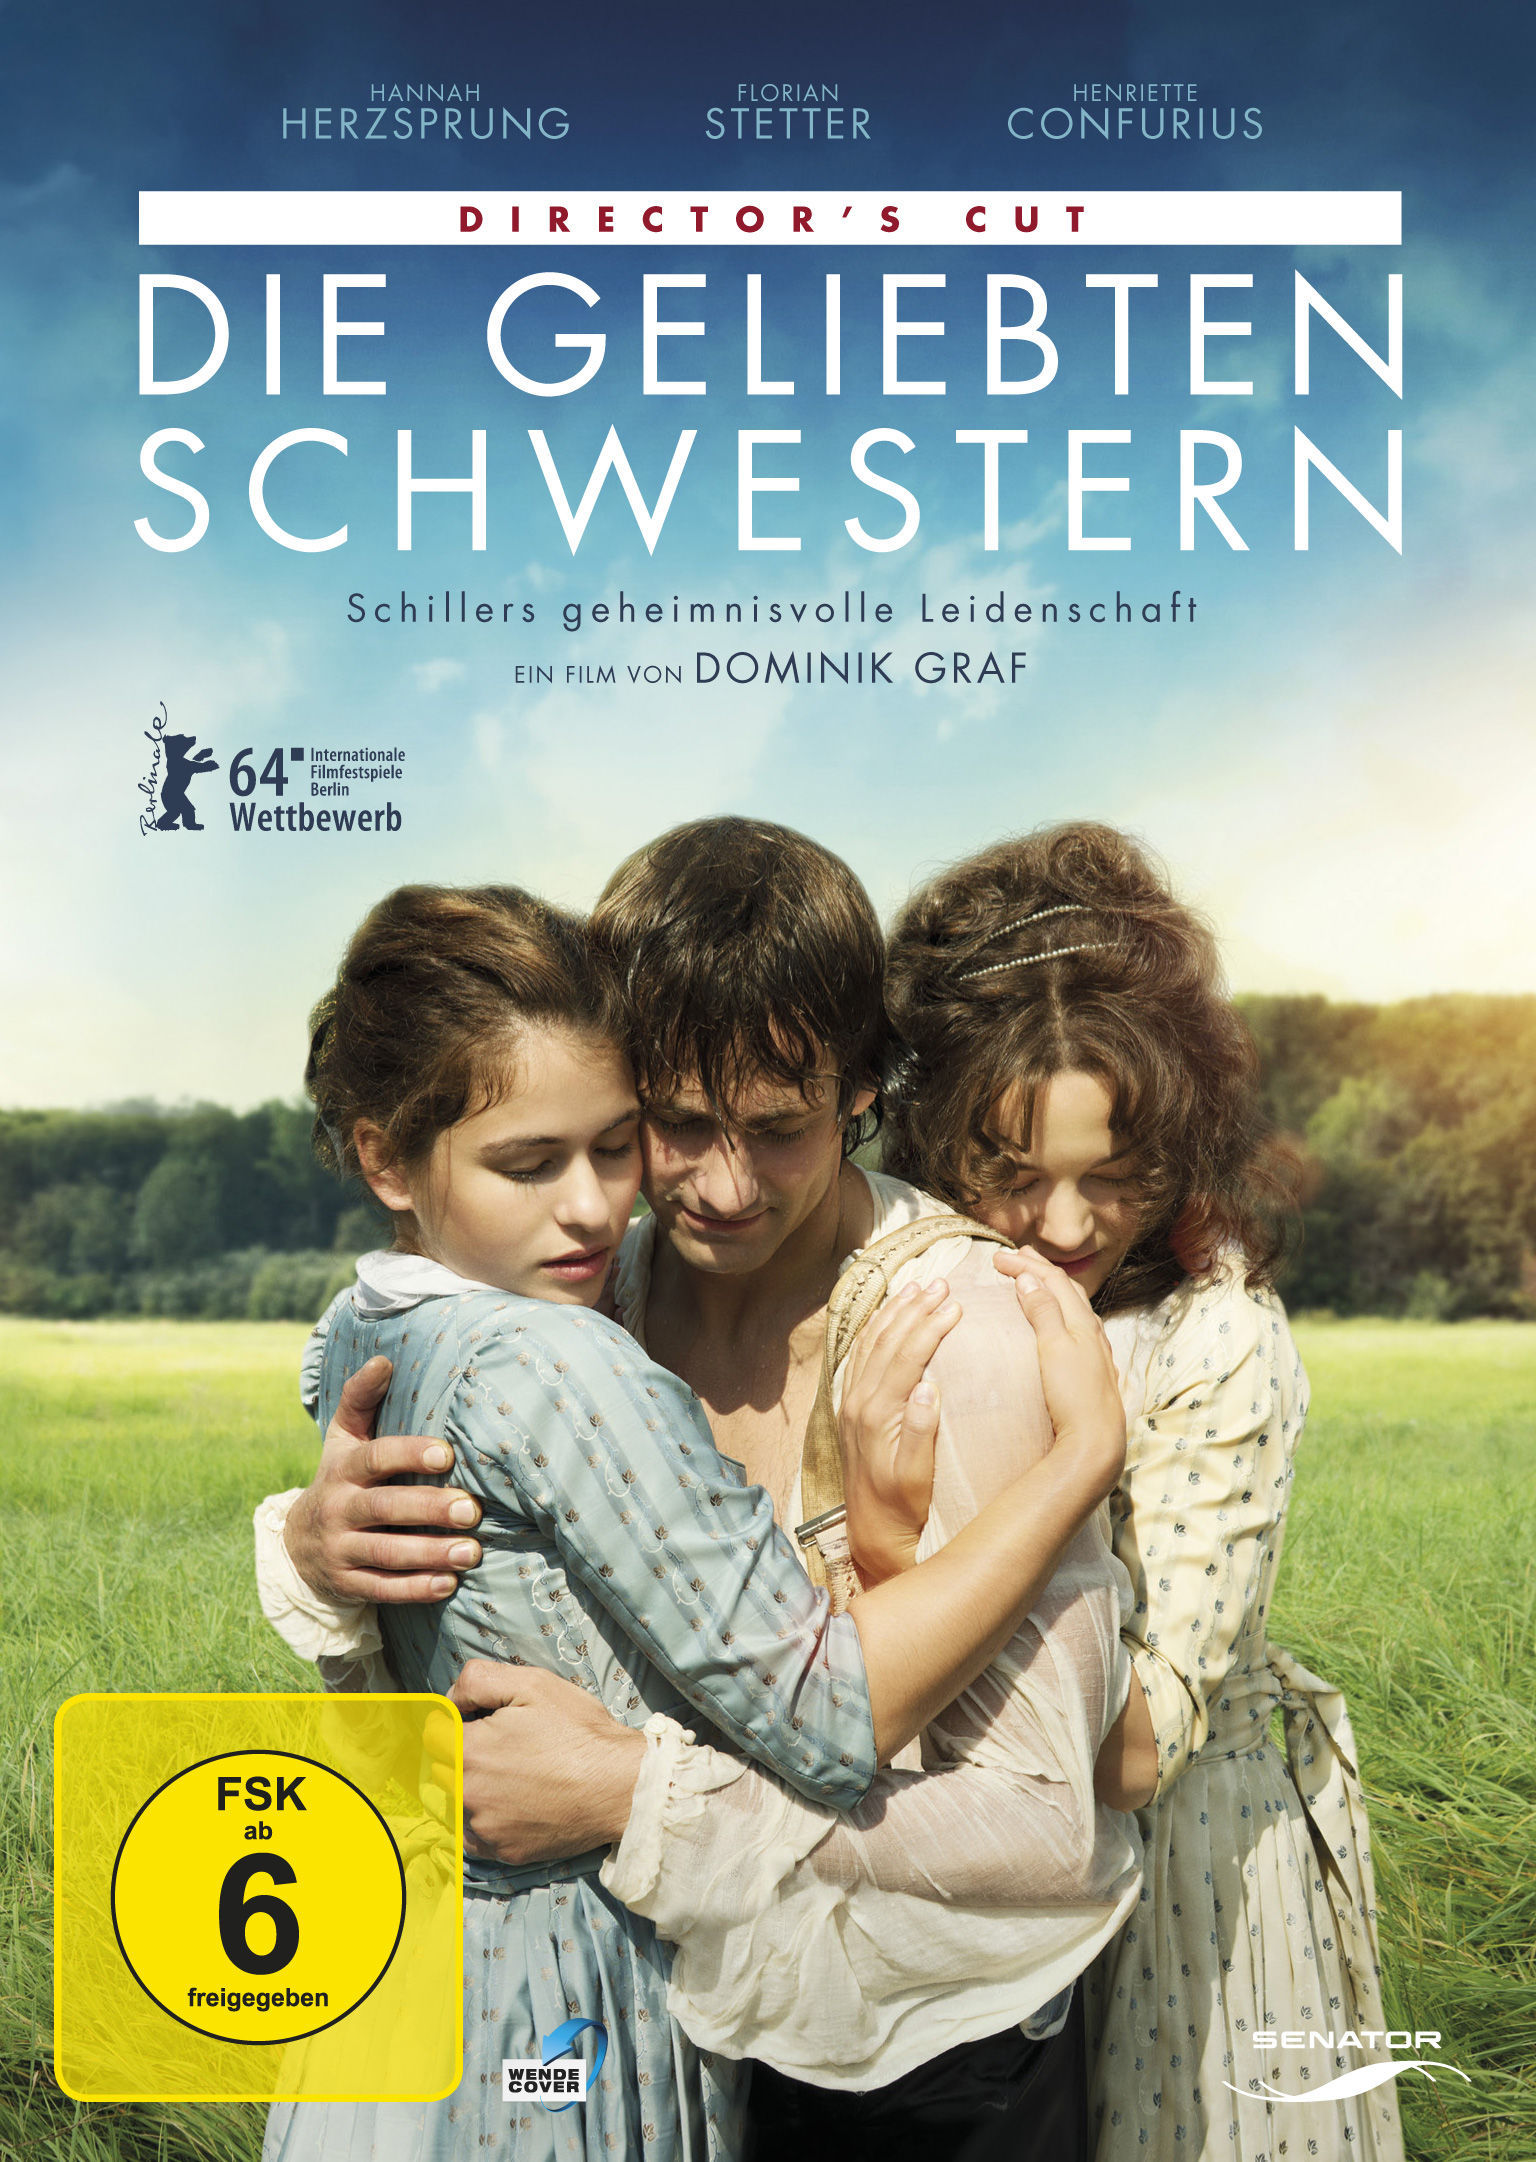 Image of Die geliebten Schwestern - Director's Cut